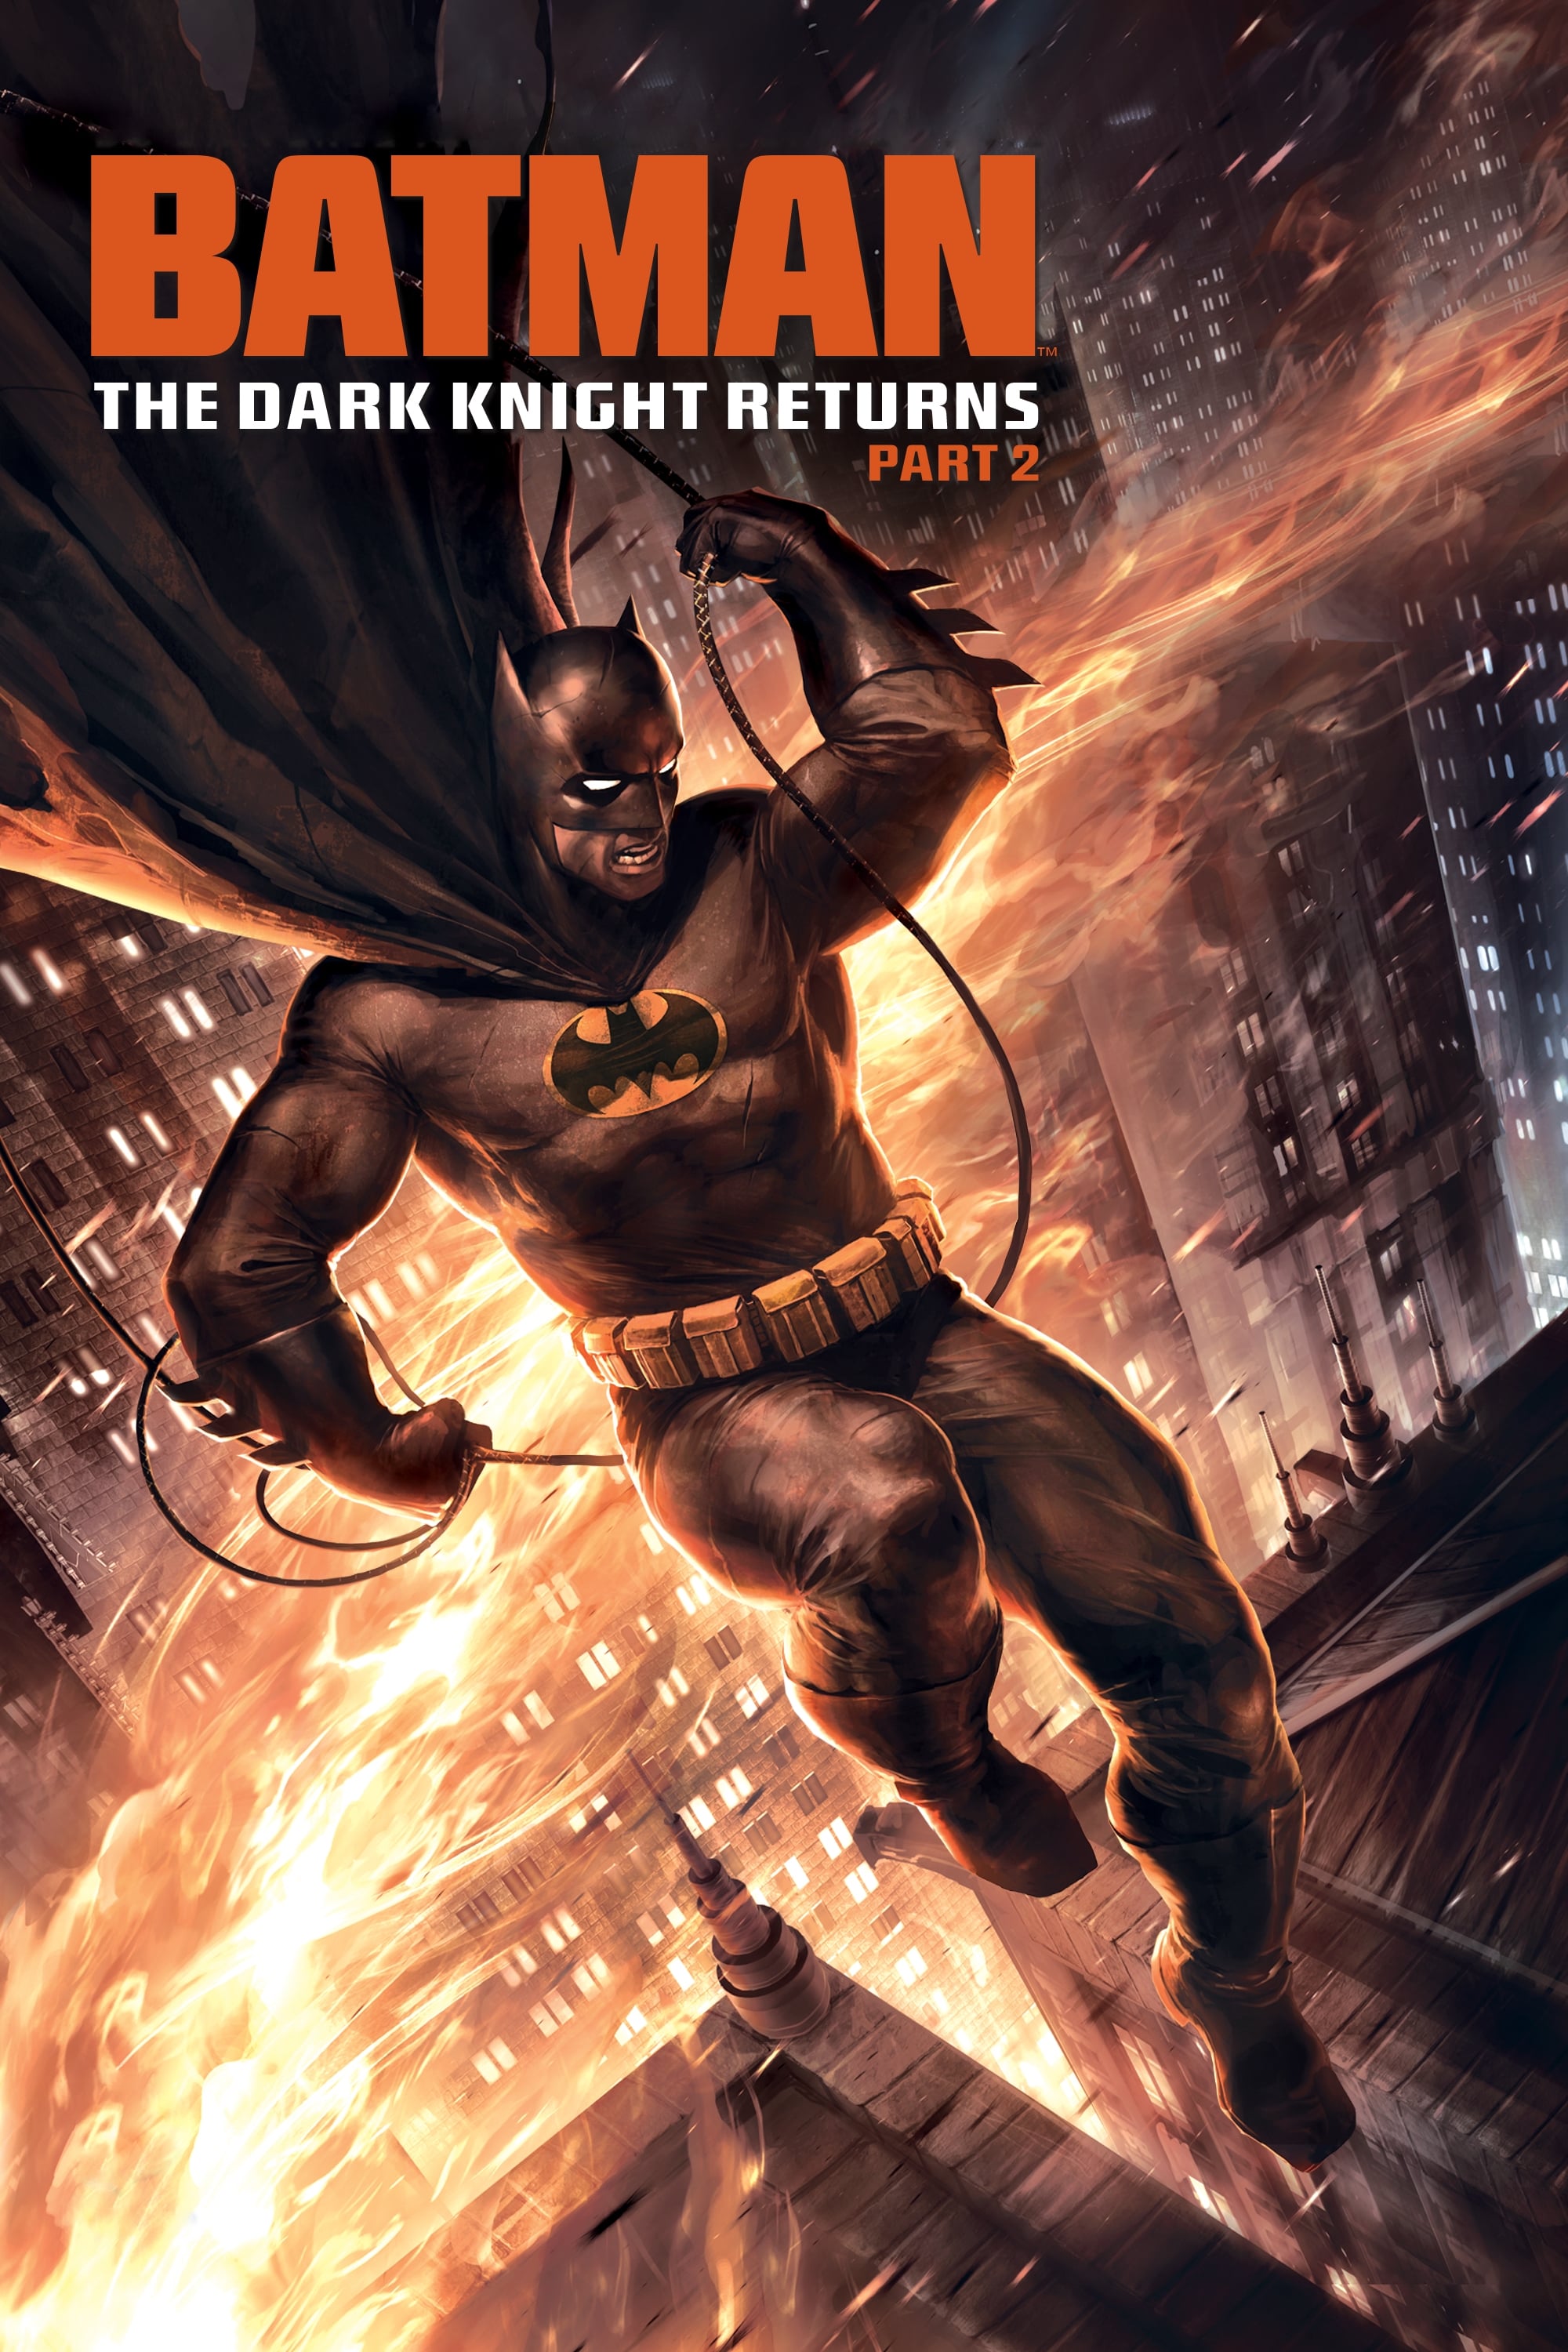 Banner Phim Nguời Dơi: Kỵ Sĩ Bóng Đêm Trở Lại, Phần 2 (Batman: The Dark Knight Returns, Part 2)